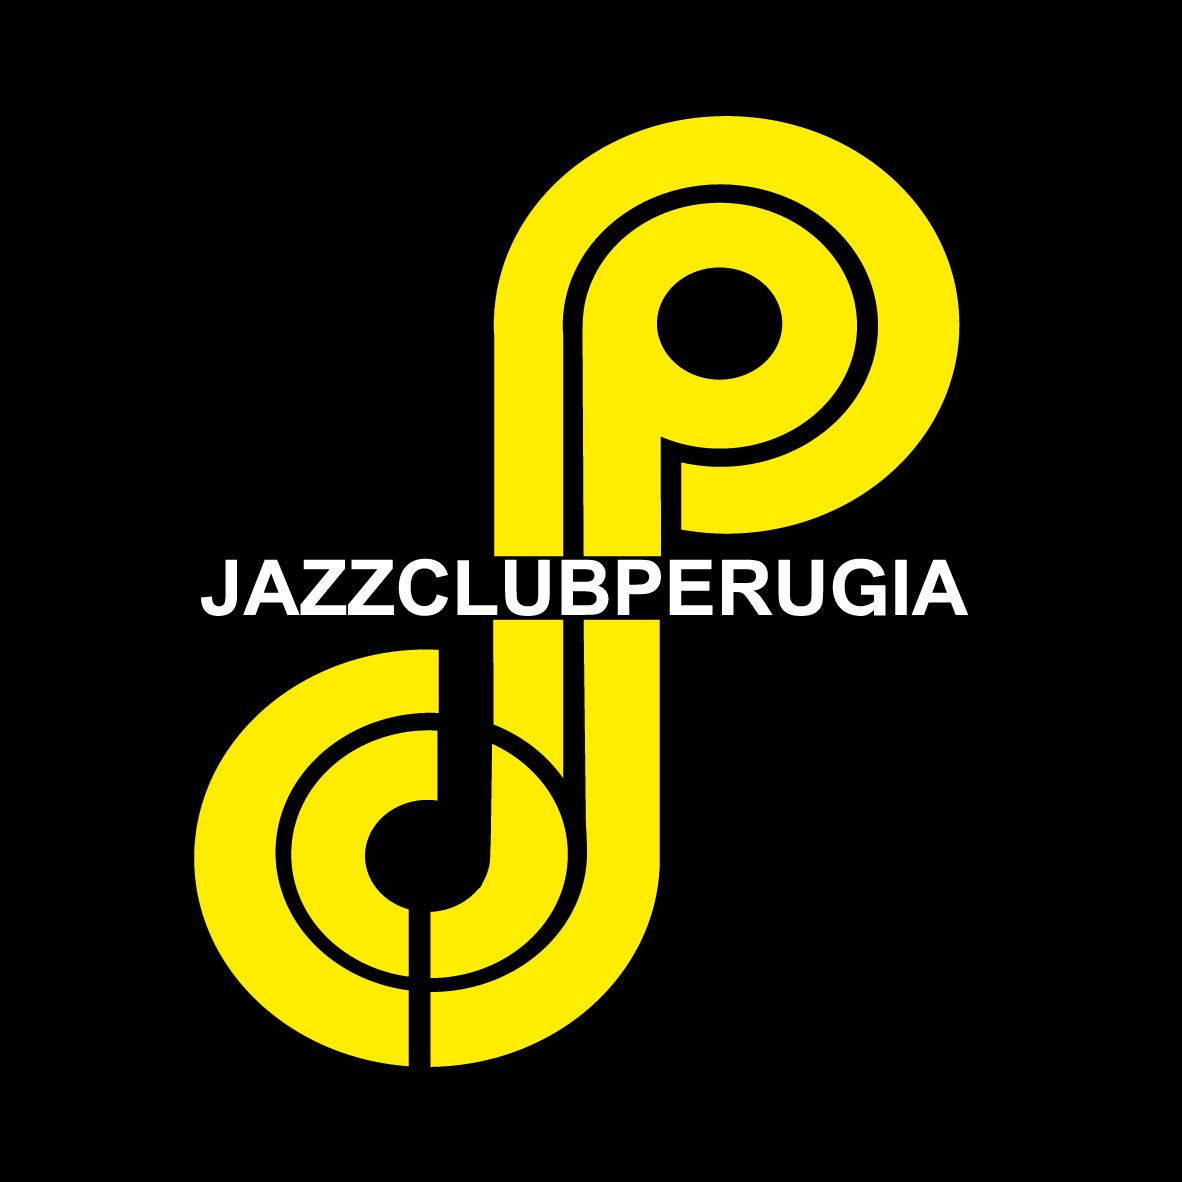 Il primo novembre il jazz club Perugia apre con il concerto di Gino Paoli e Danilo Rea che presentano il loro ultimo album “due come noi che…”